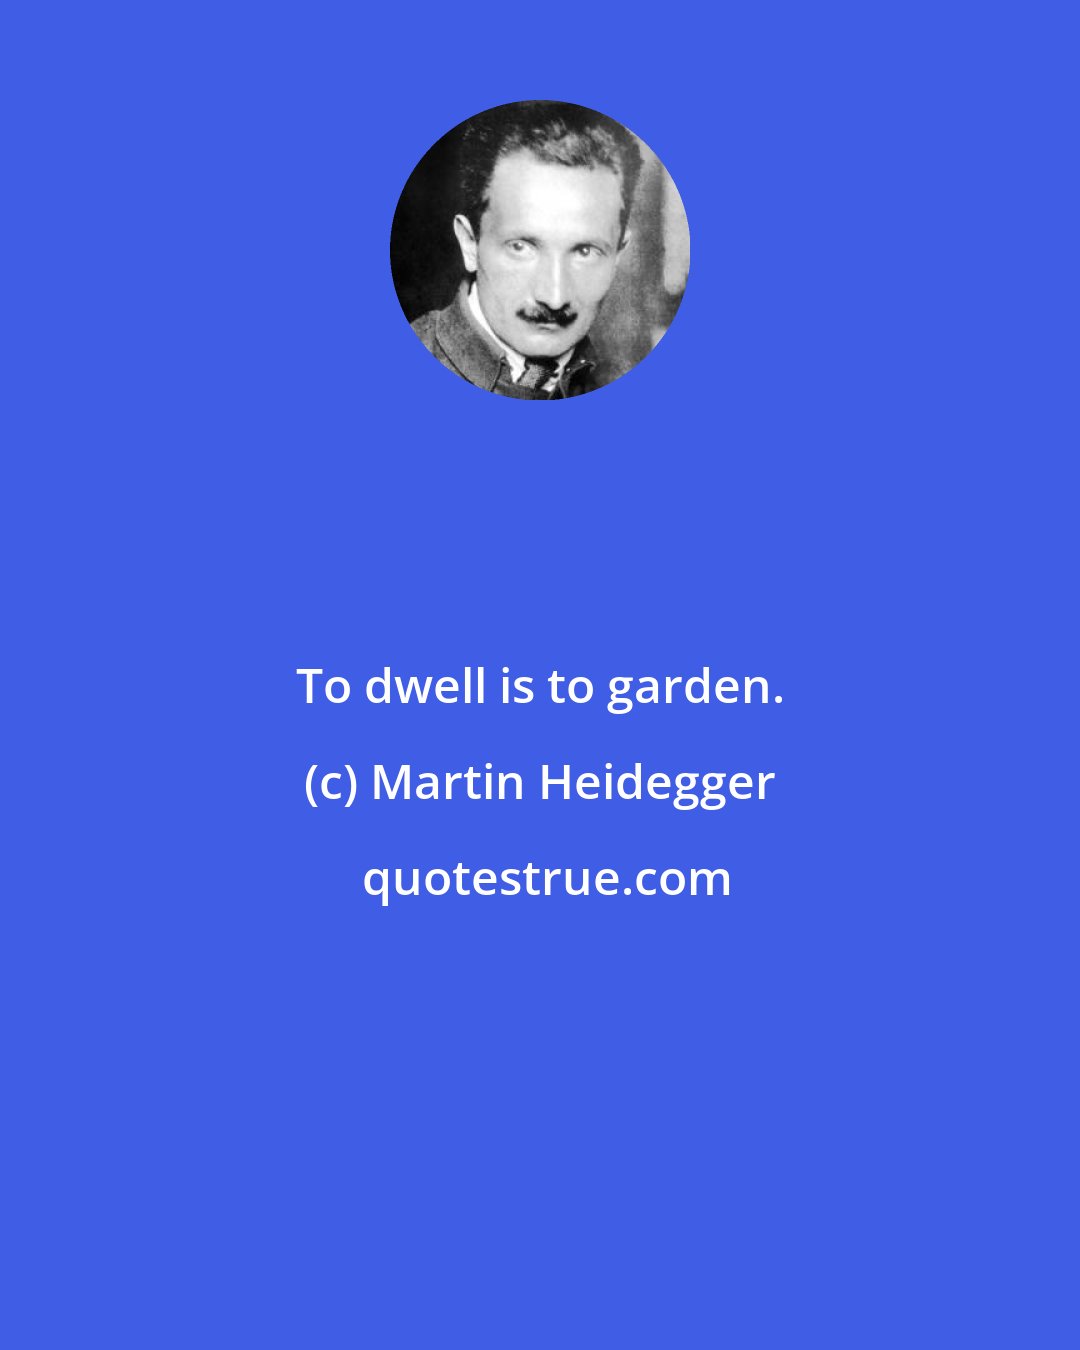 Martin Heidegger: To dwell is to garden.